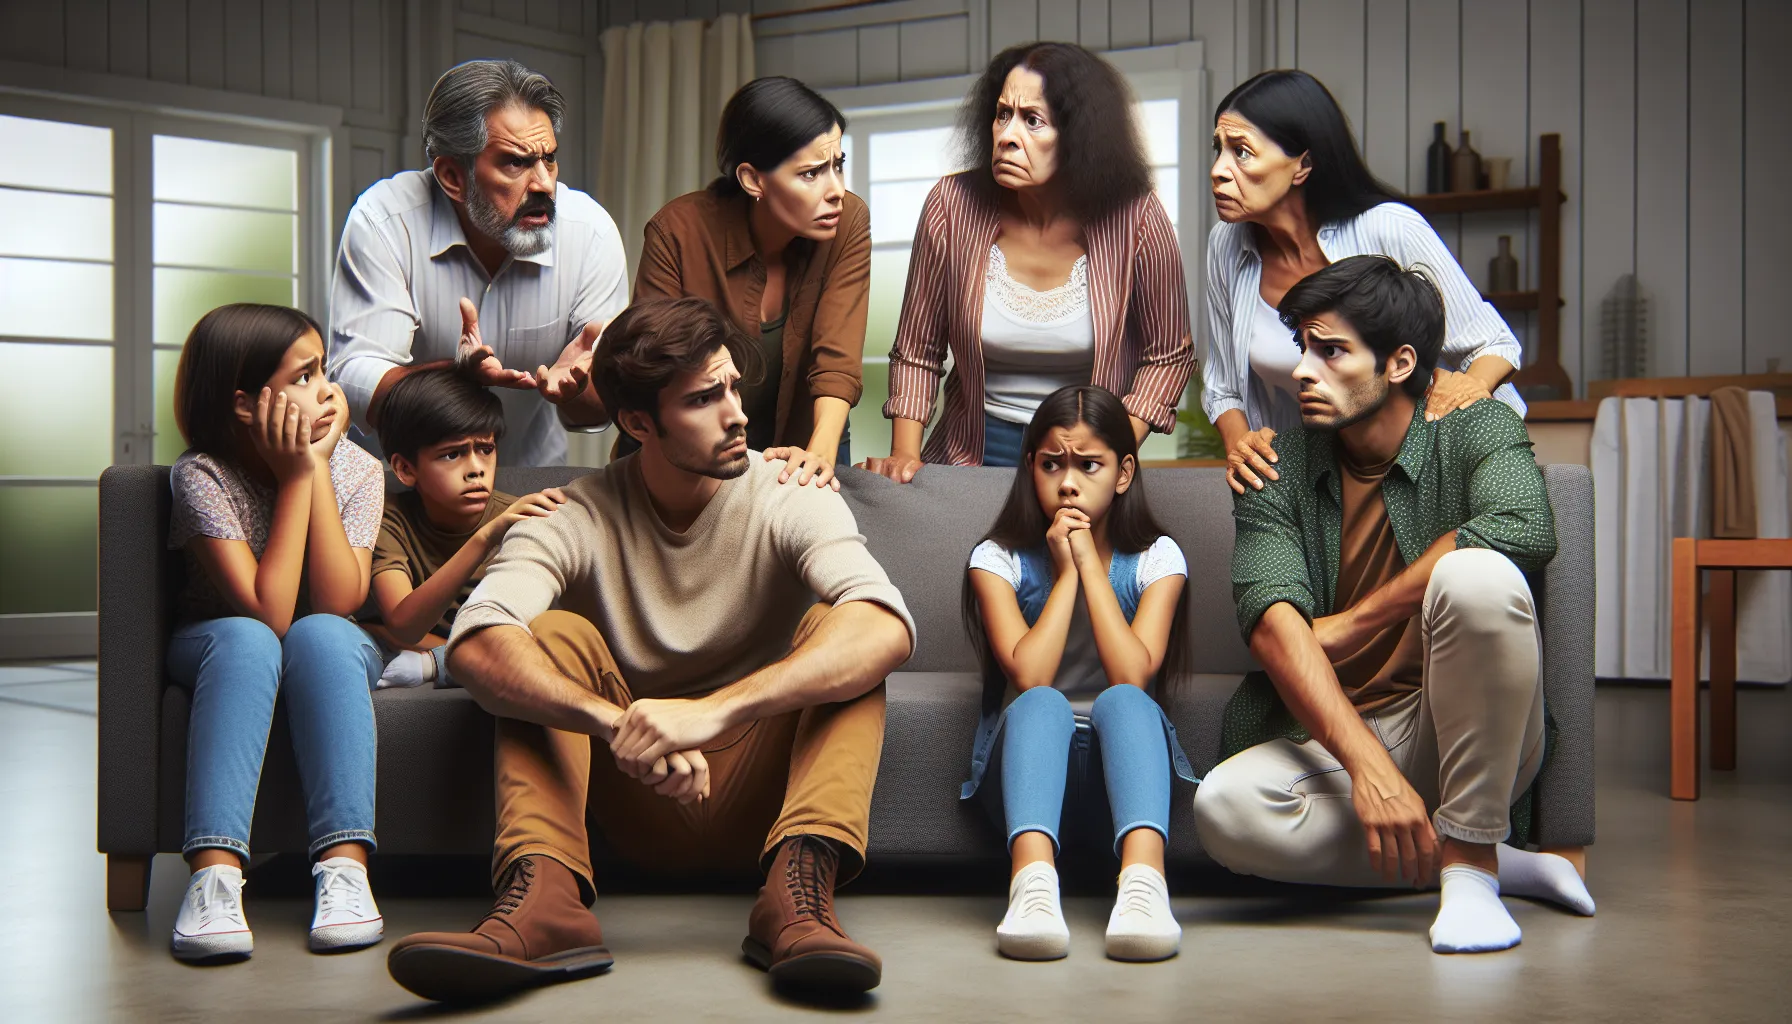 Imagen ilustrativa de una familia con expresiones de preocupación y conflicto